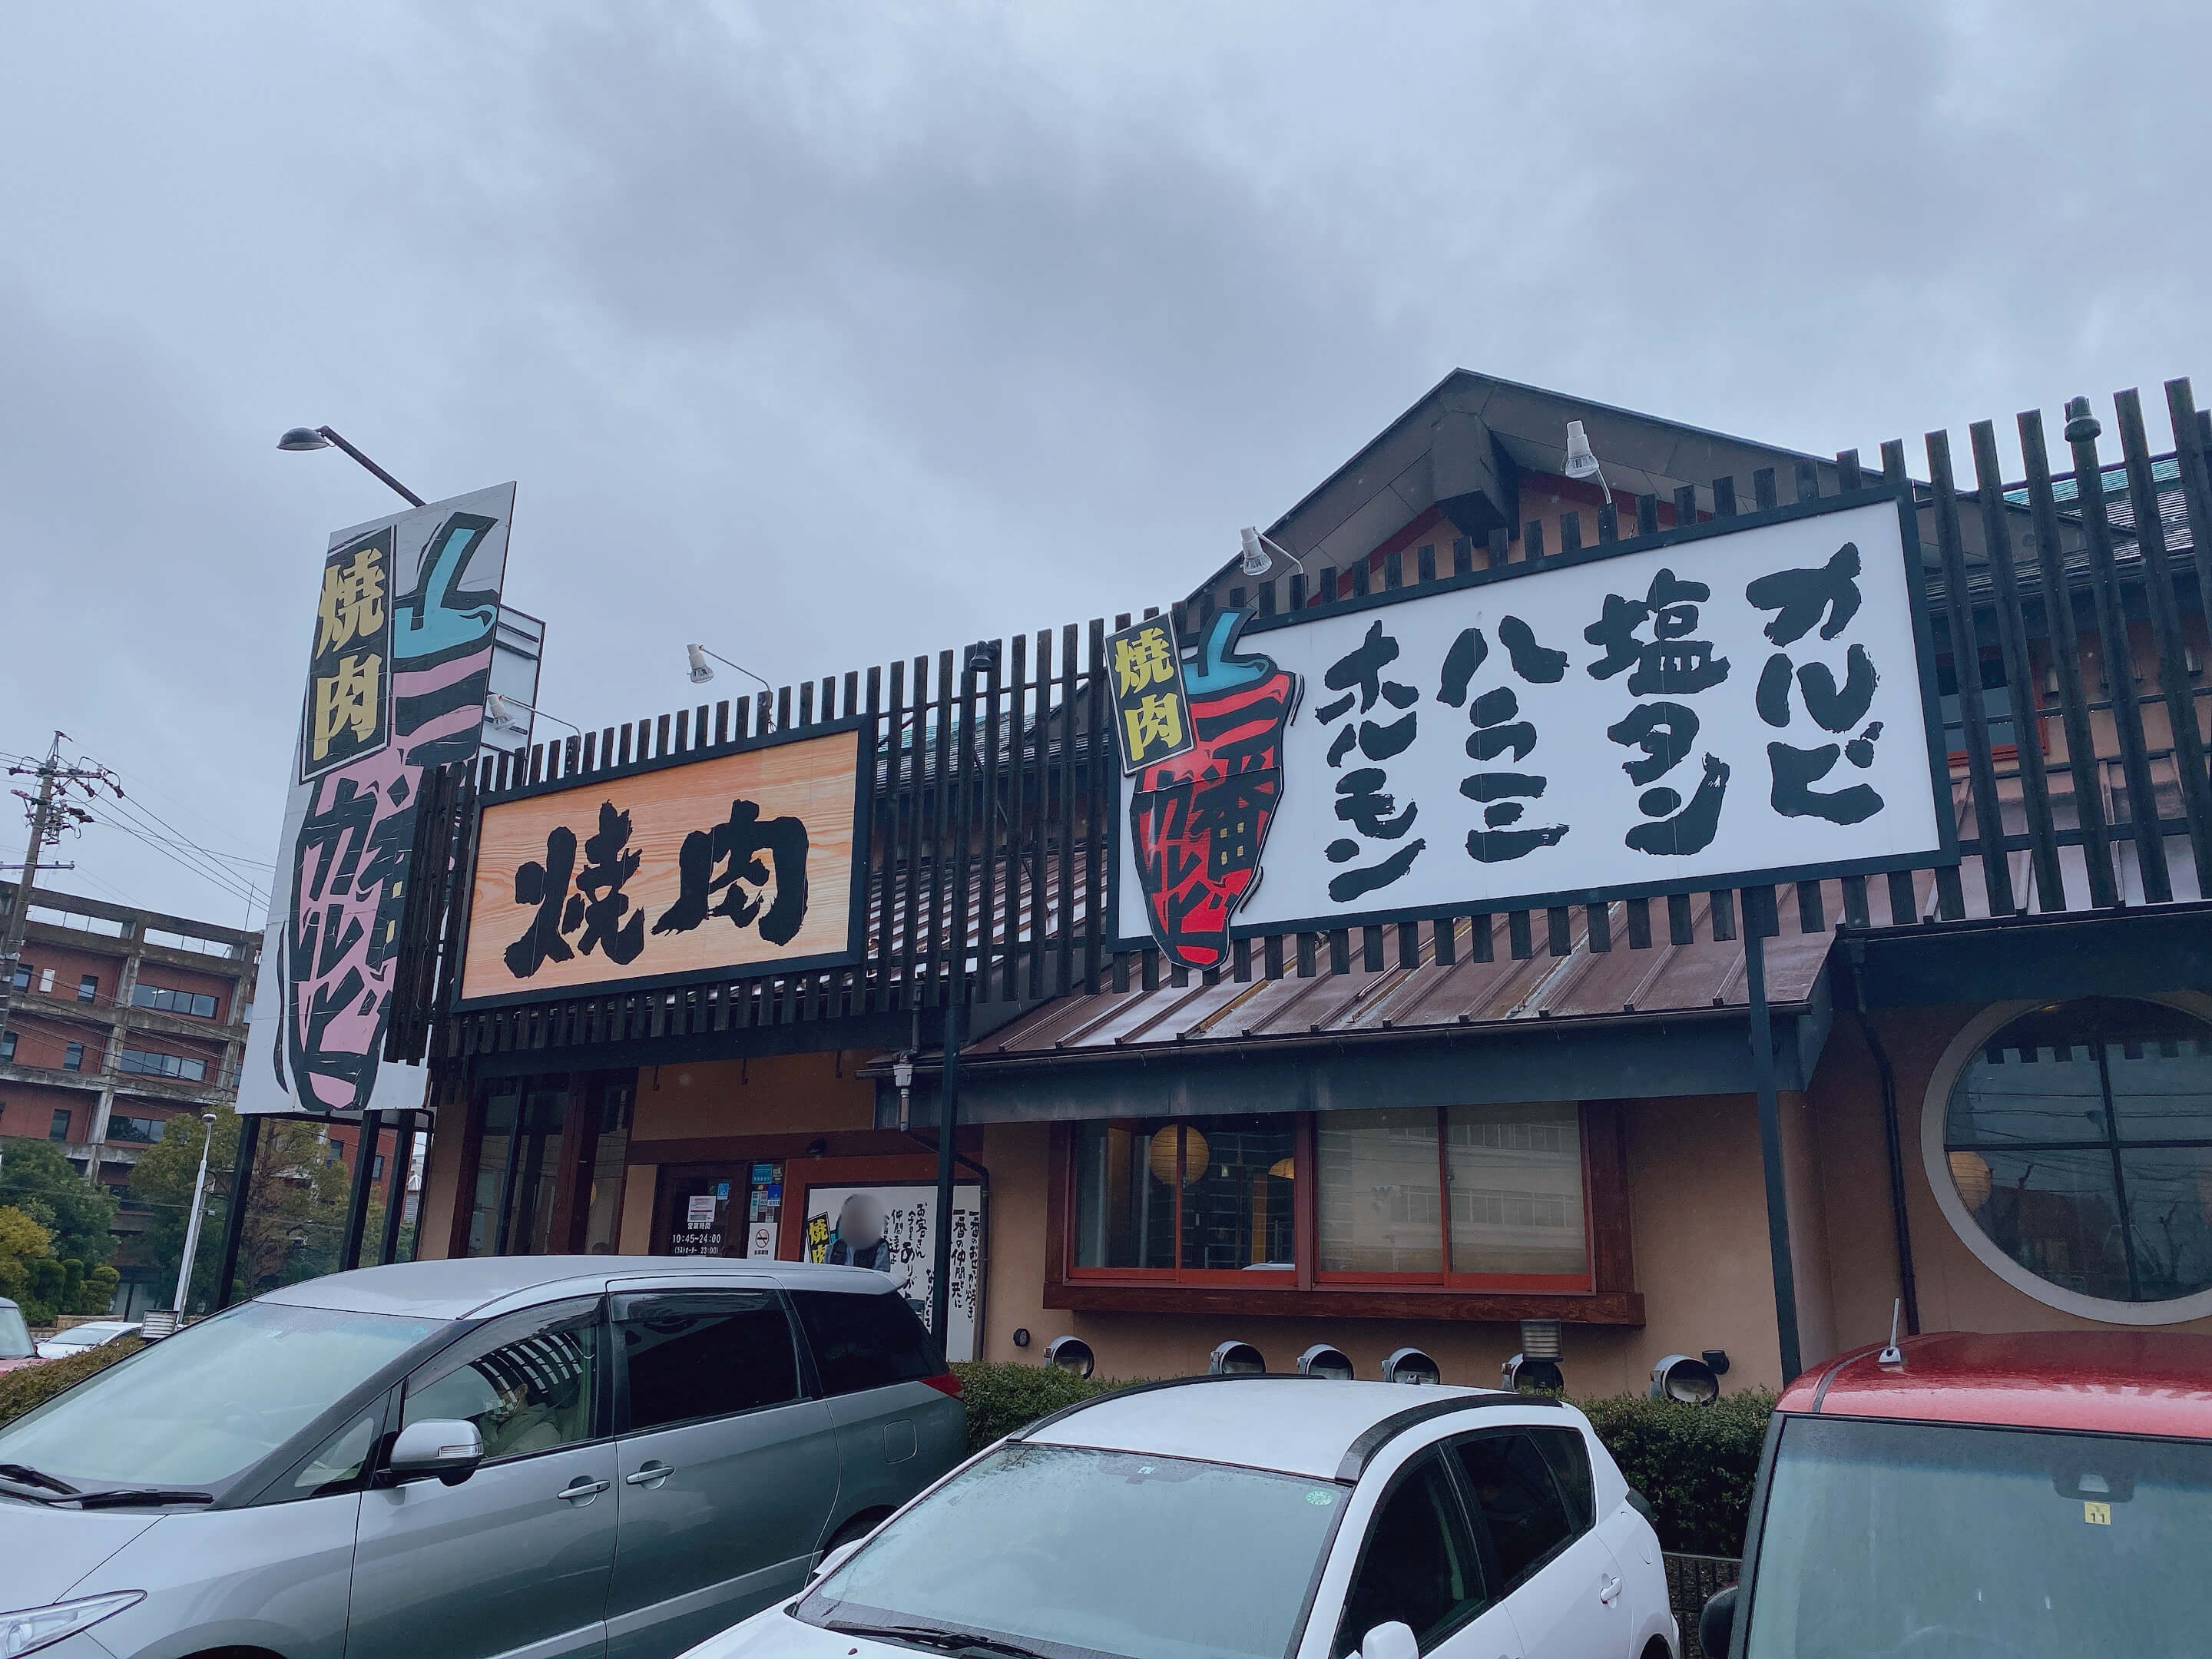 岡崎の焼肉一番カルビ羽根店が閉店予定 岡崎にゅーす